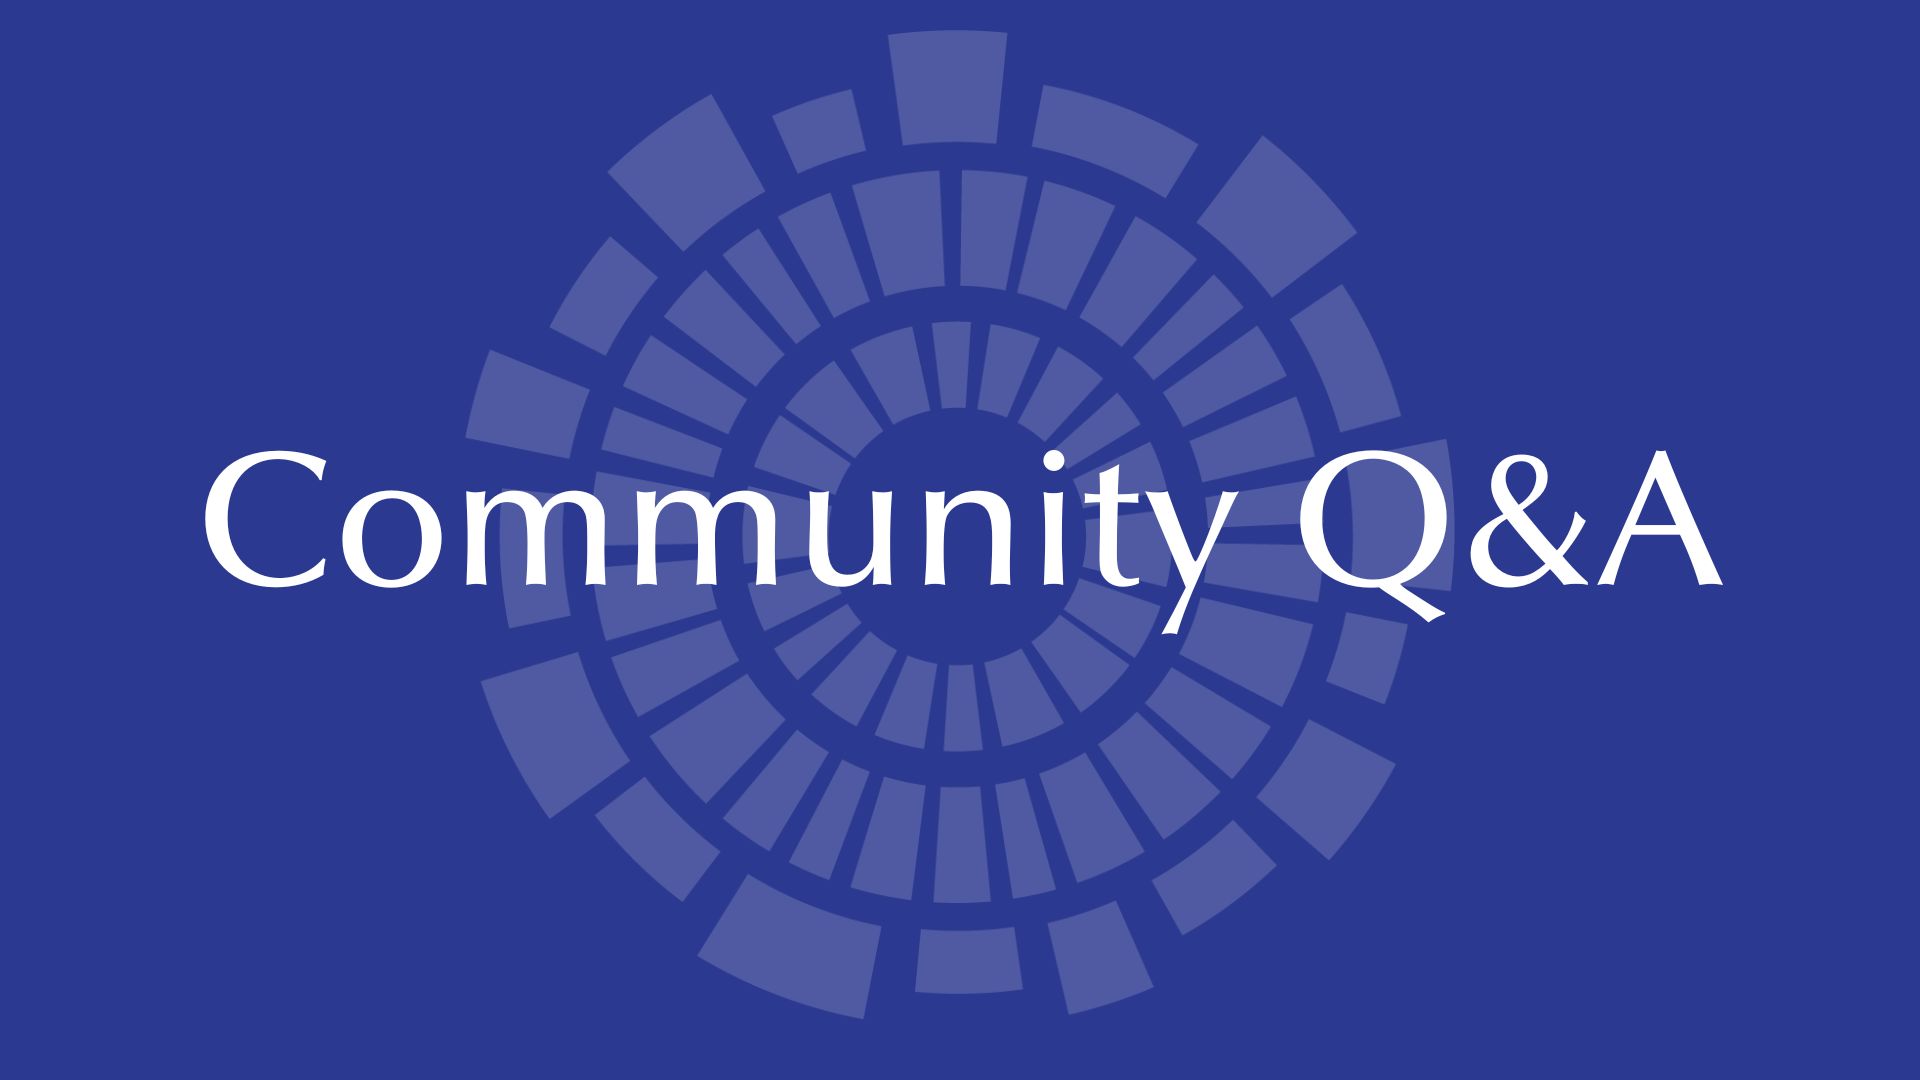 Community Q&A